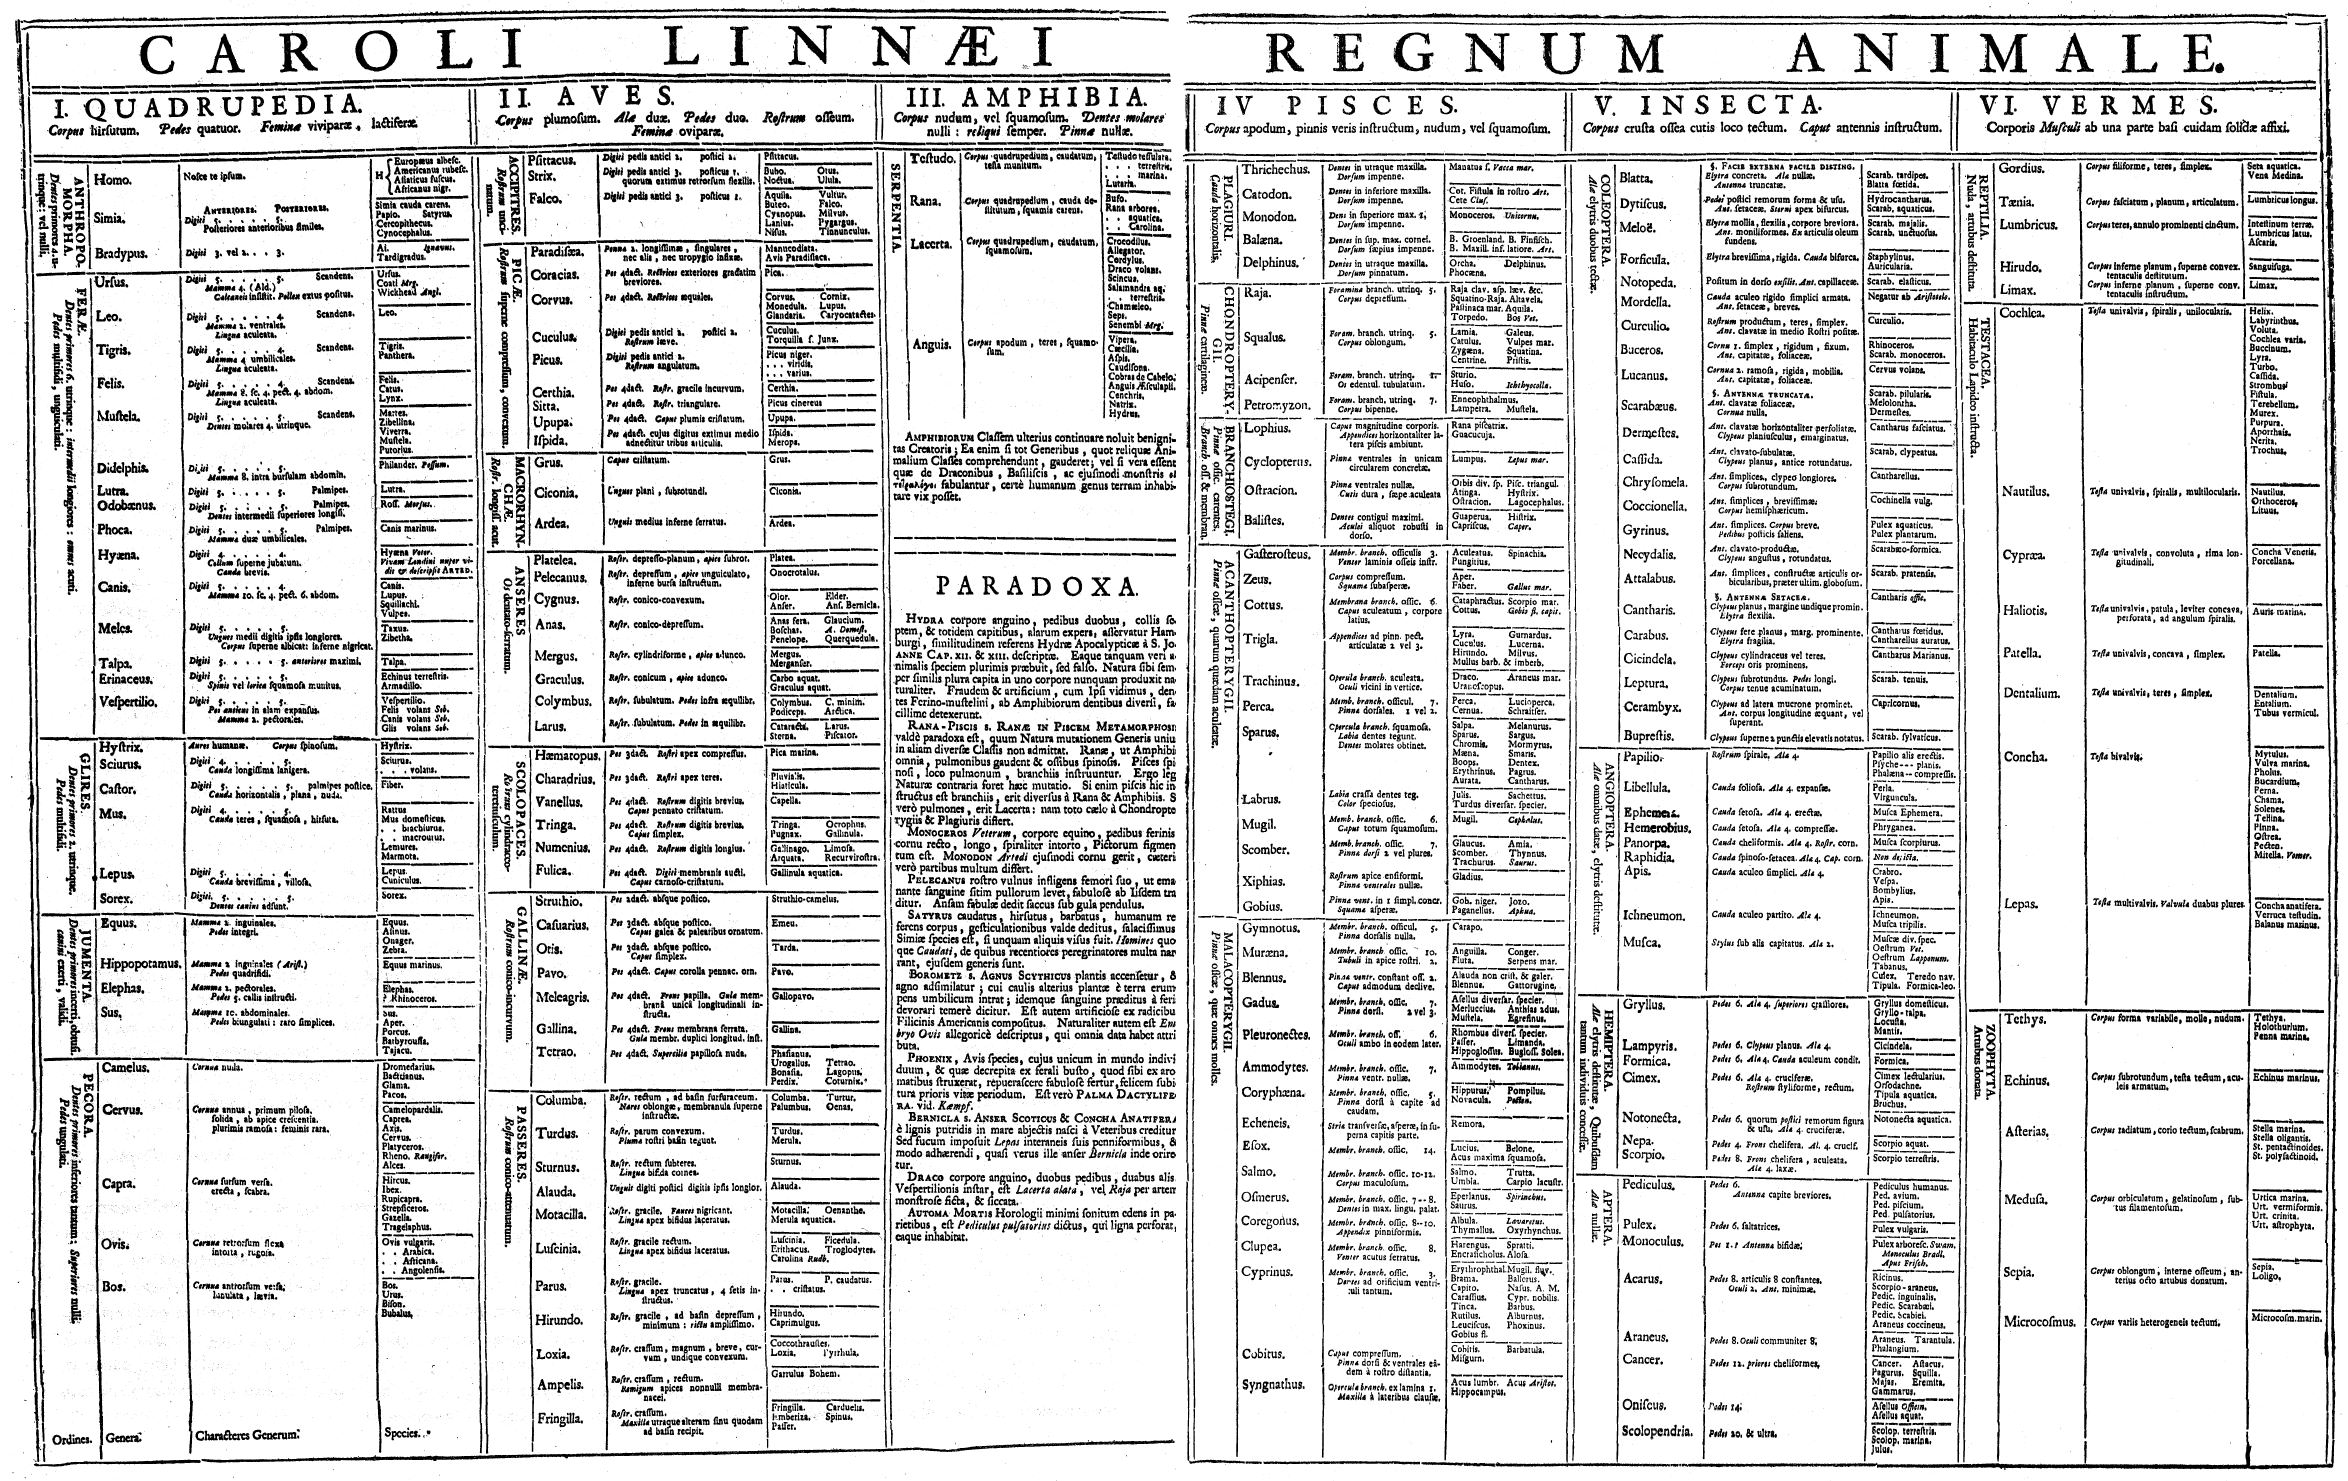 Linnaeus chart